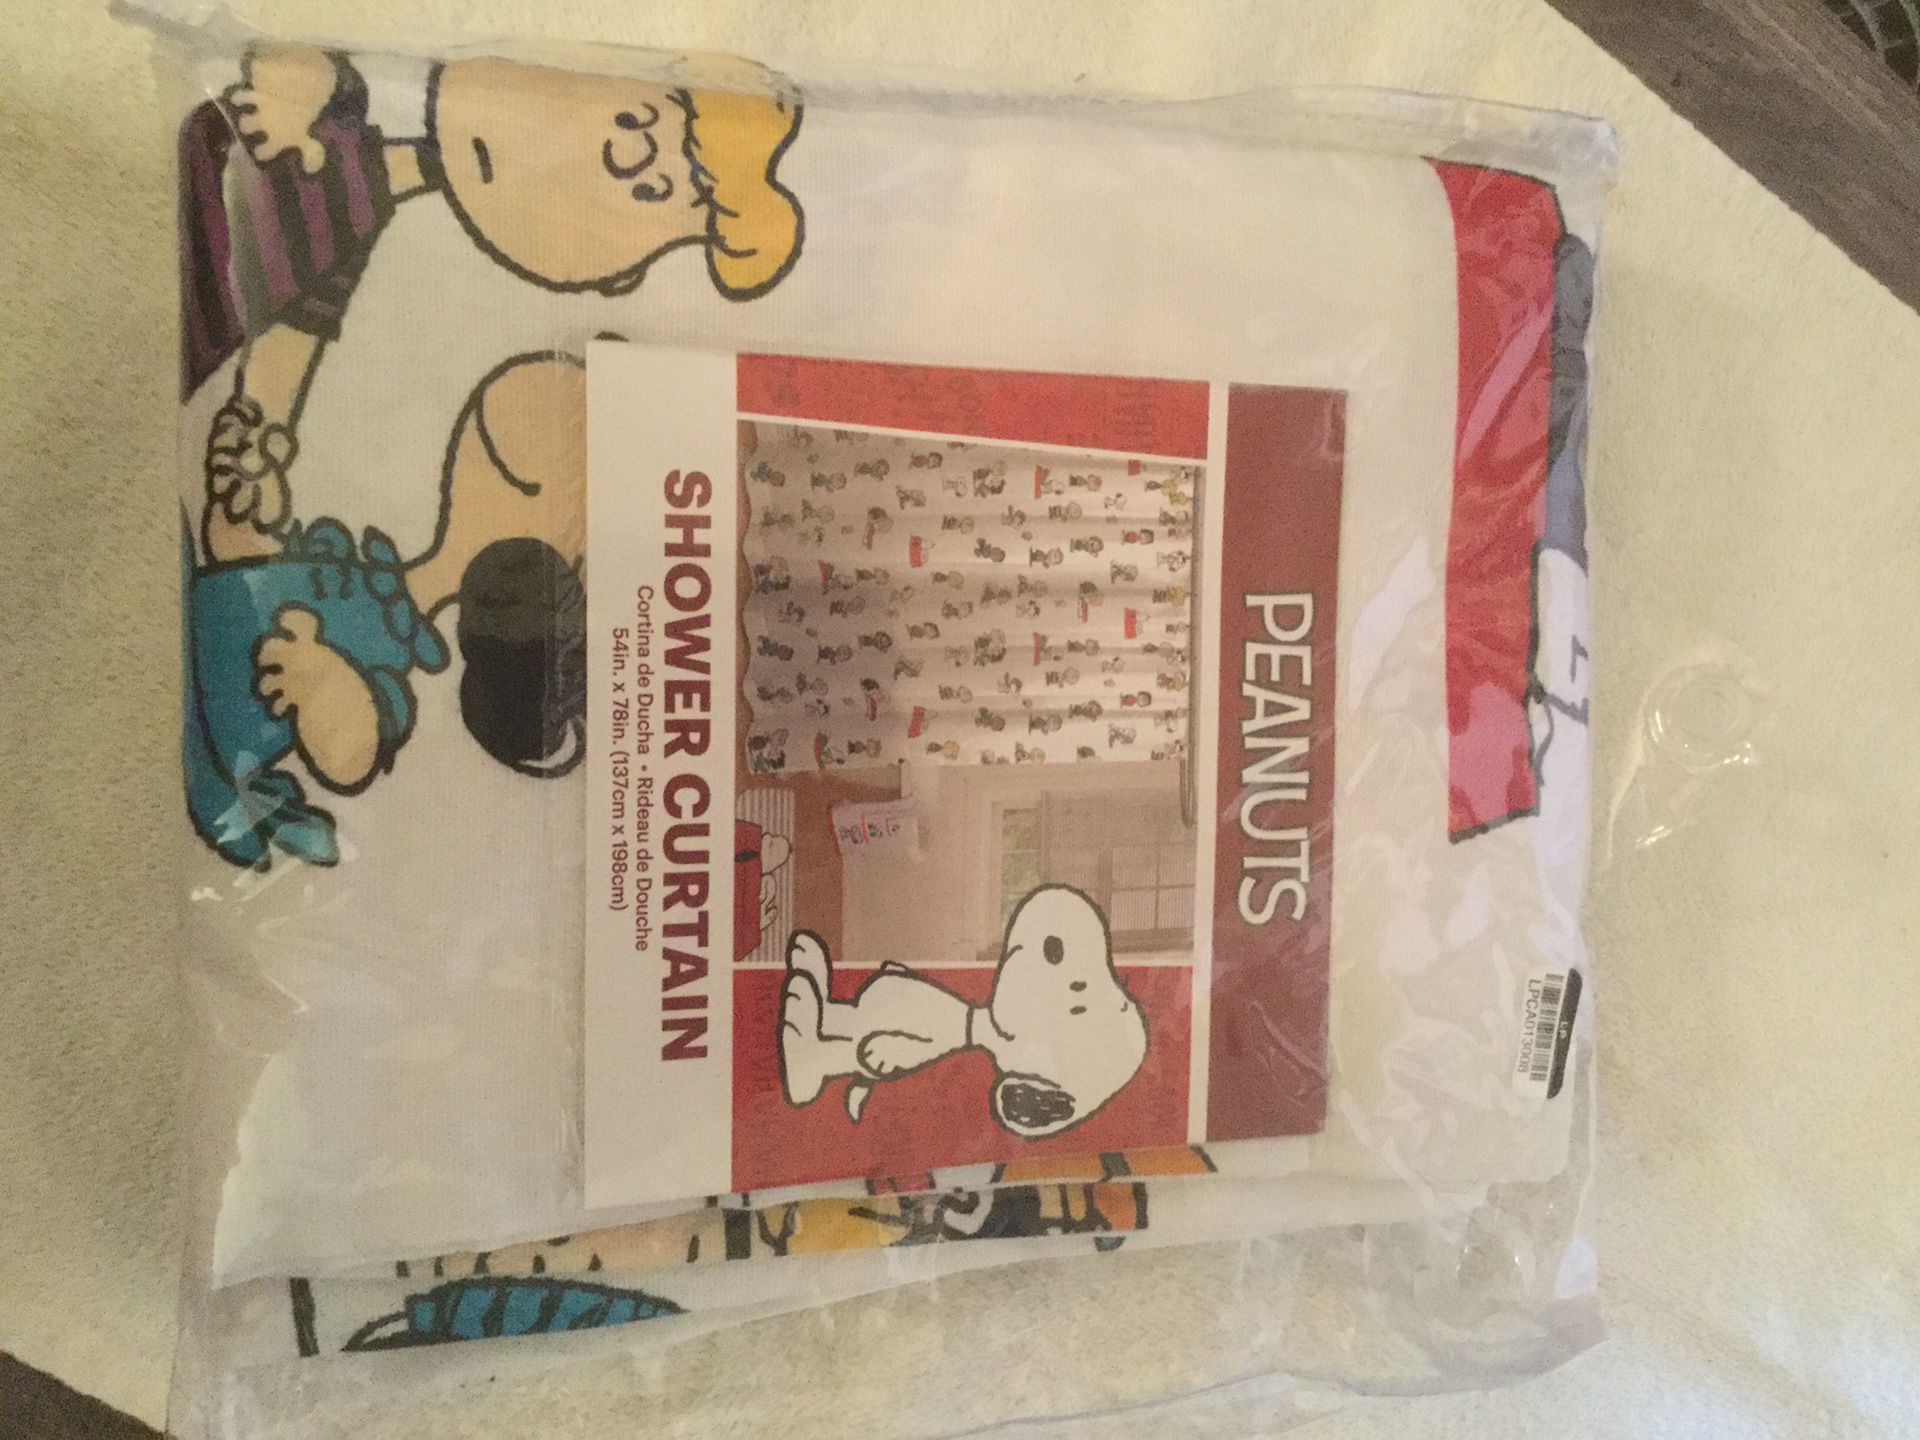 Peanuts Fun Brighten Color Shower Curtain 54”x78”